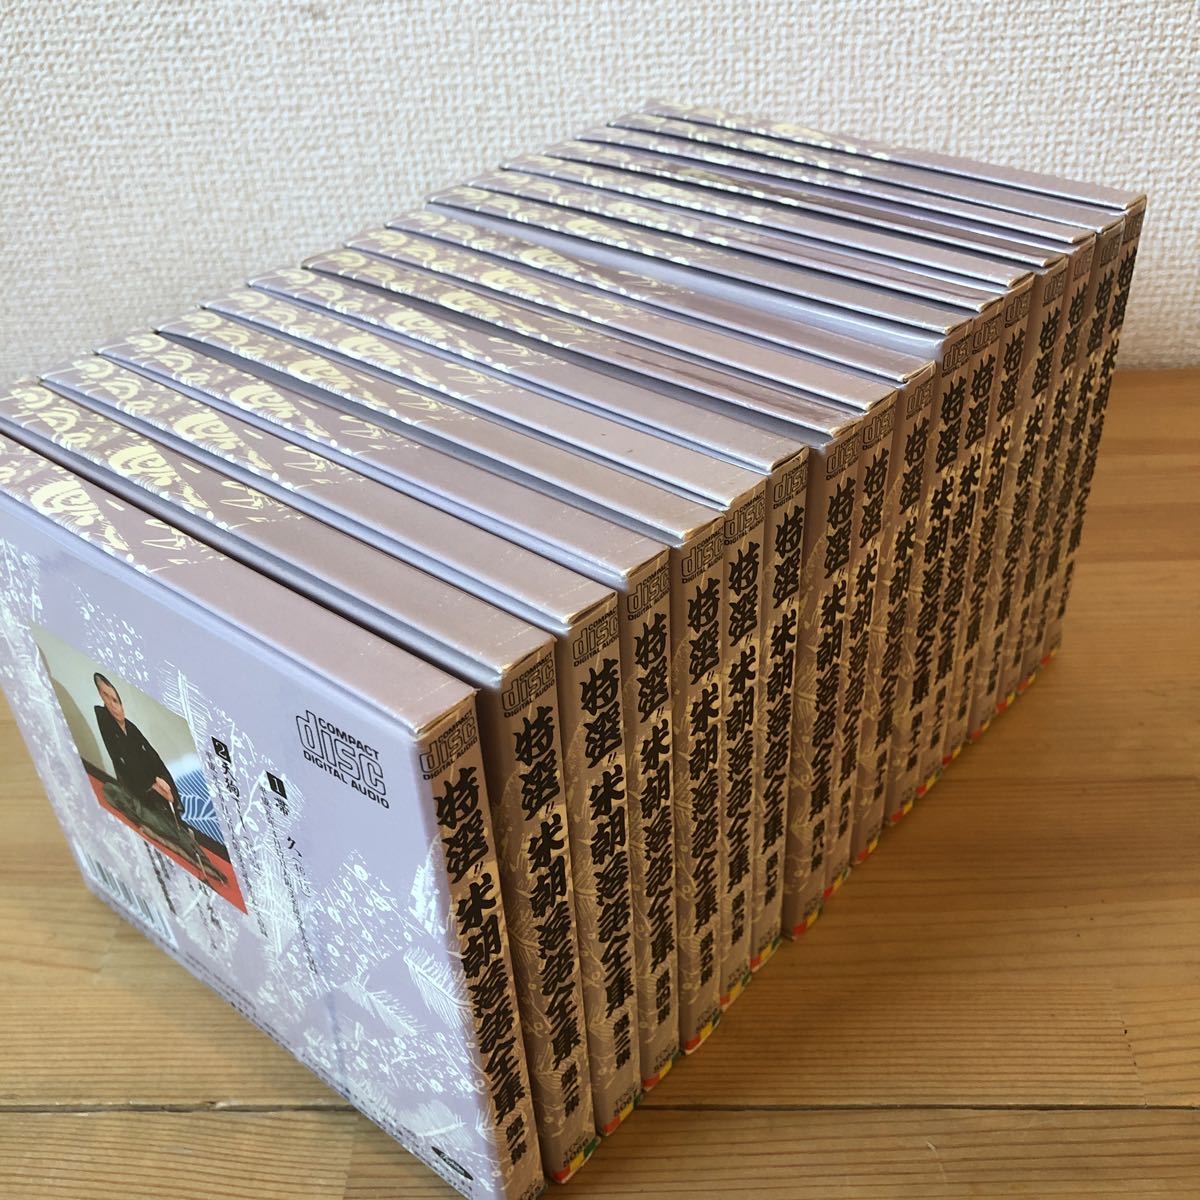 1560円 新品本物 桂米朝 特選 米朝落語全集 CD 第一期